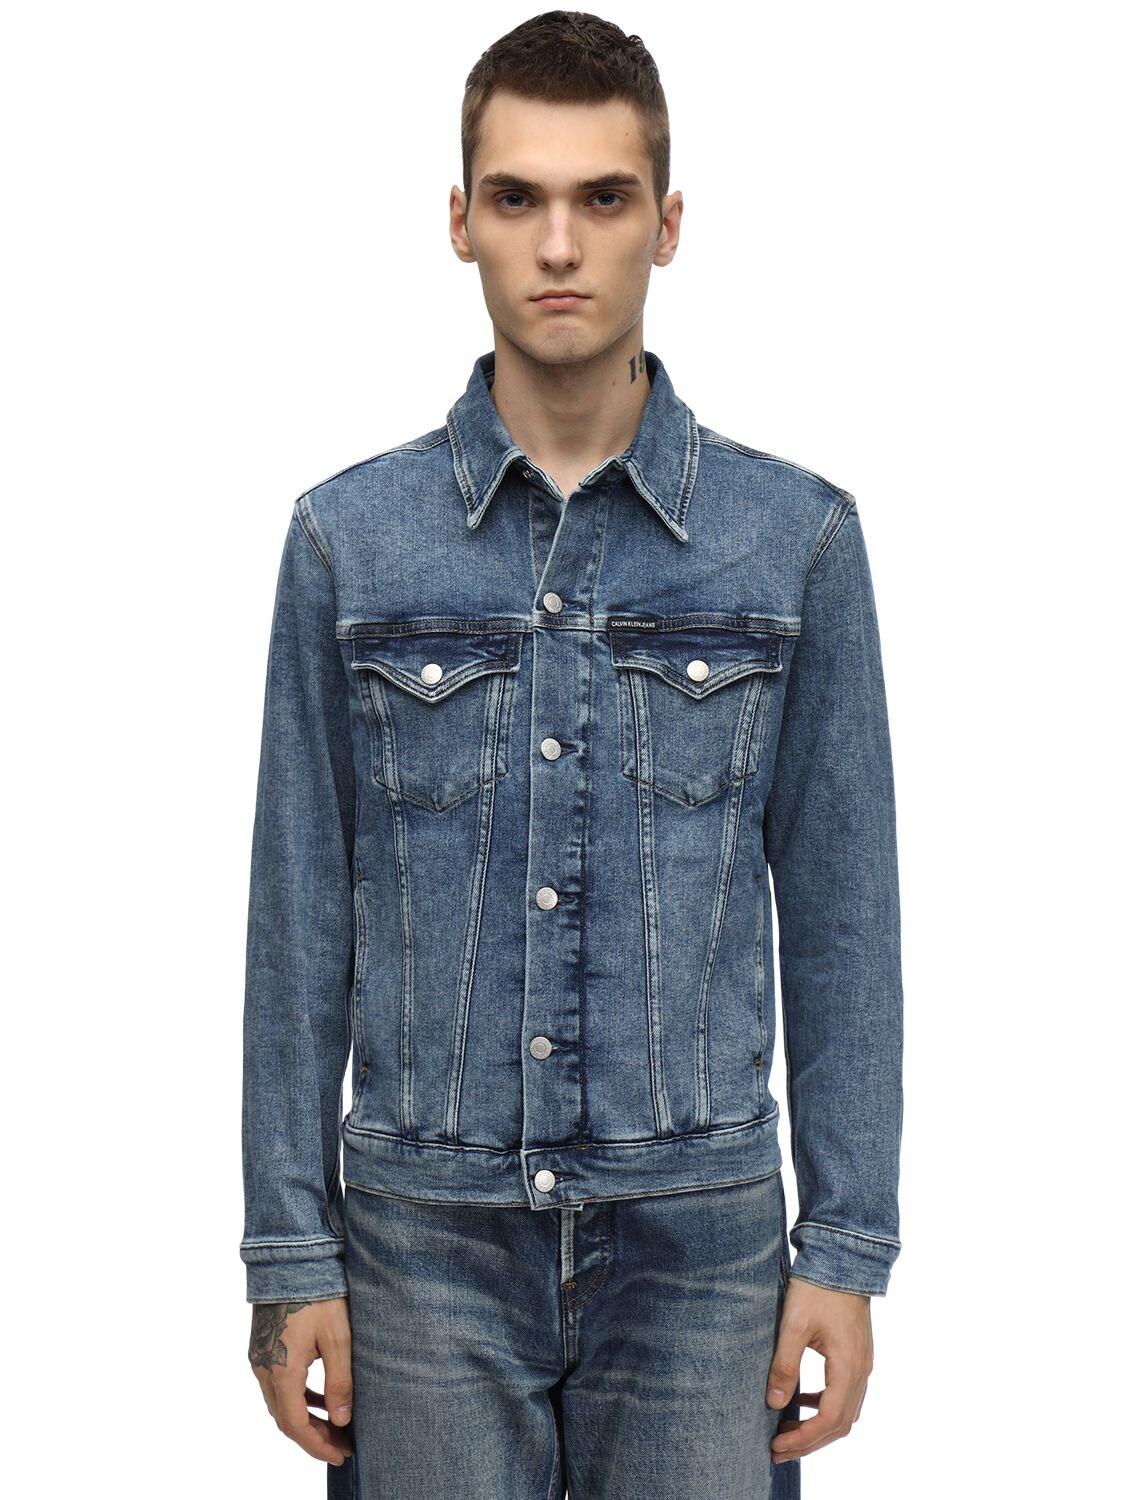 Calvin Klein Slim Cotton Blend Denim Jacket in Blue for Men - Lyst